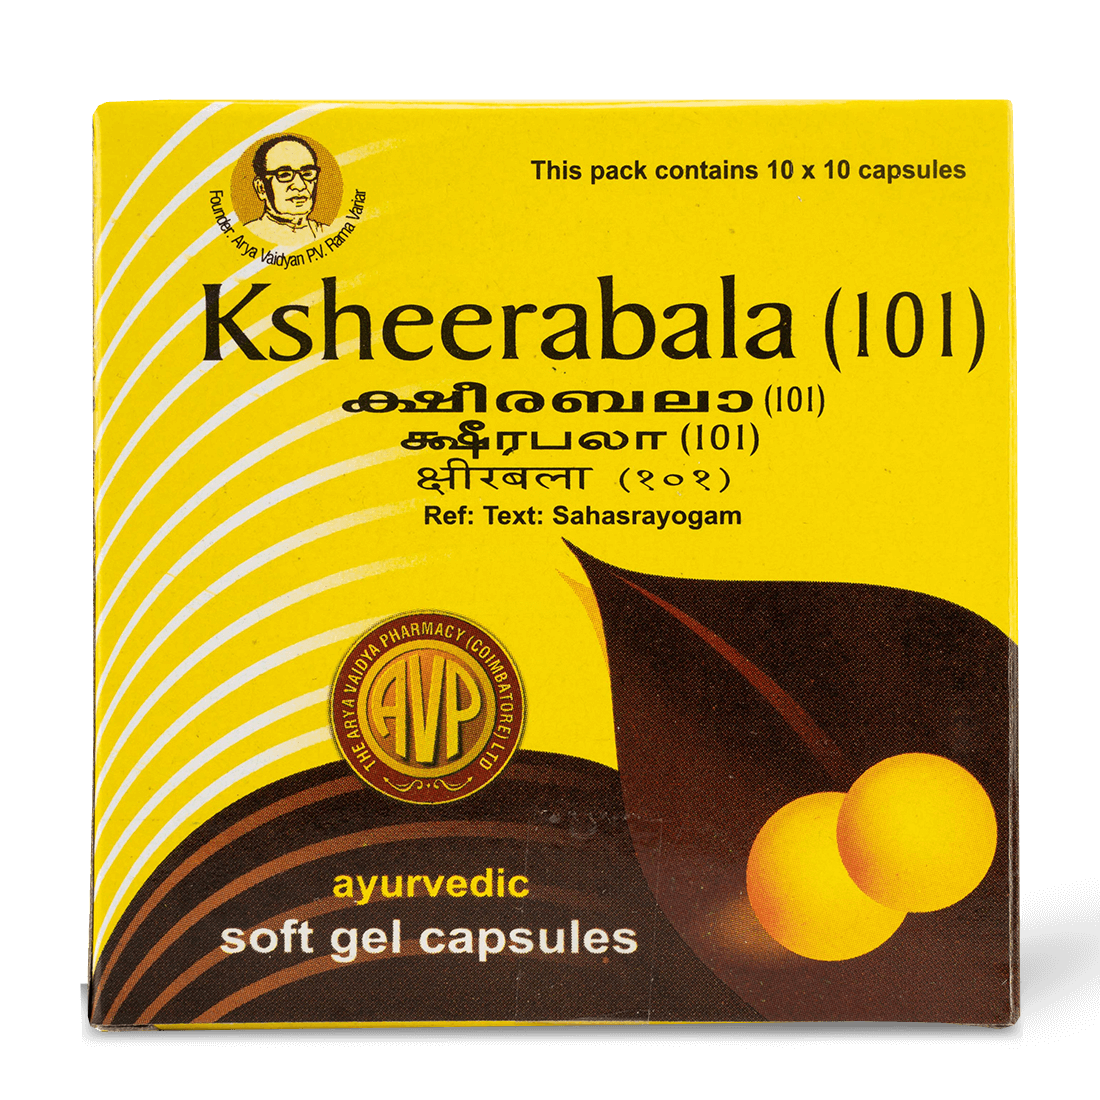 Ksheerabala (101) Capsule | Box